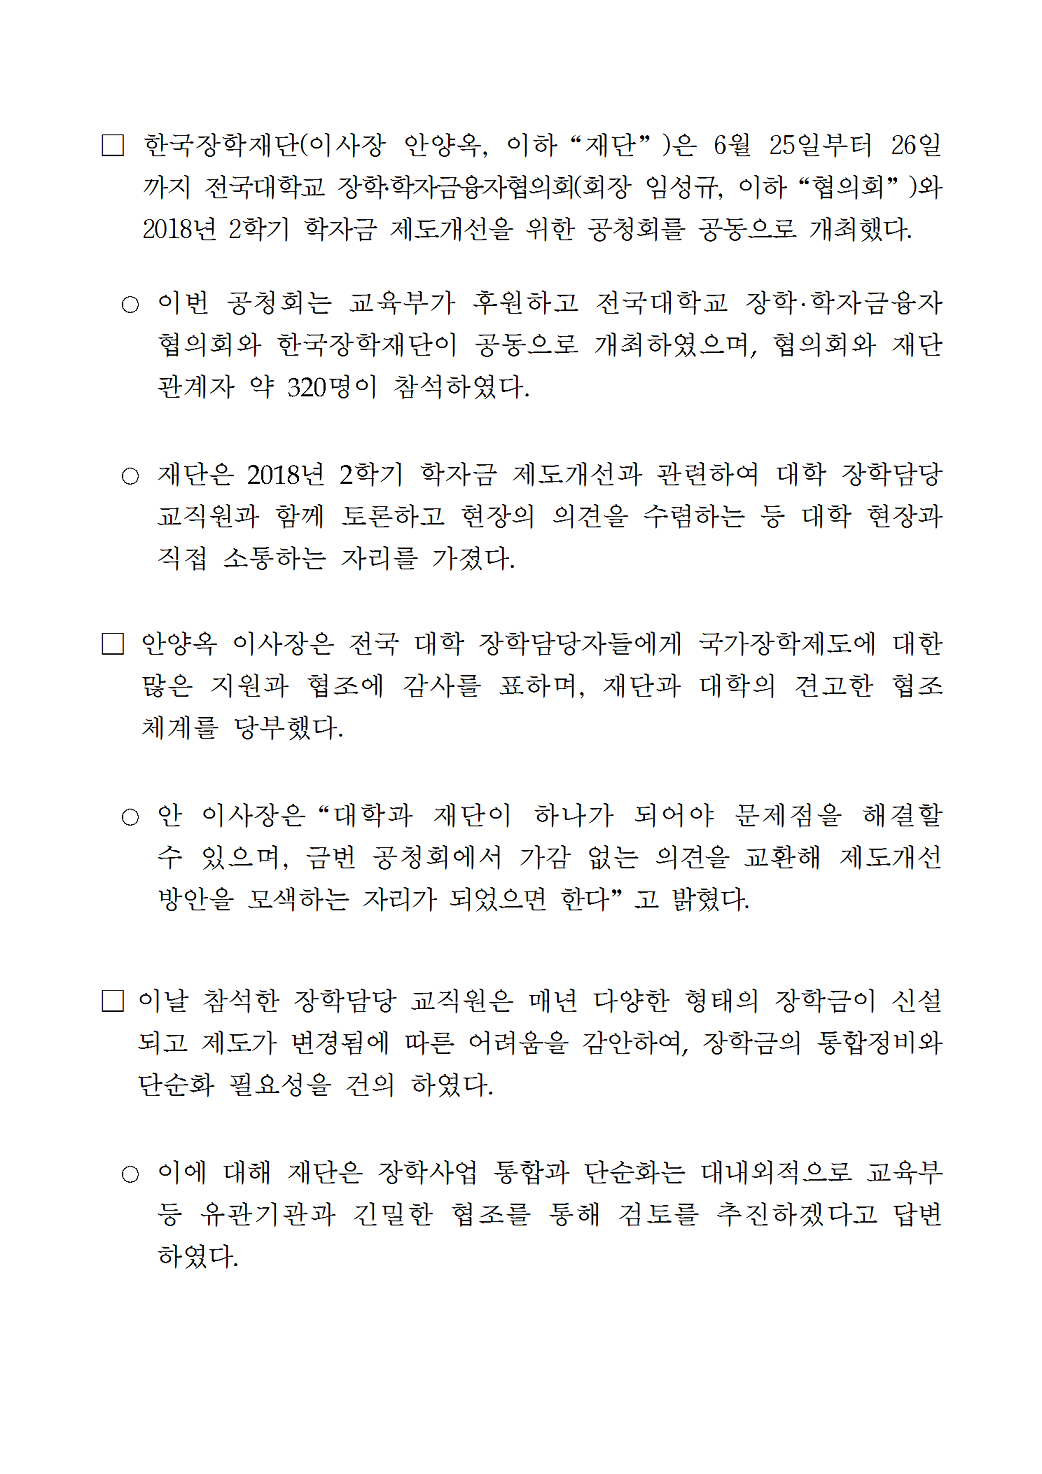 06-26(화)[보도자료] 장학재단-전국대학교 장학융자협의회 공청회 개최002.bmp